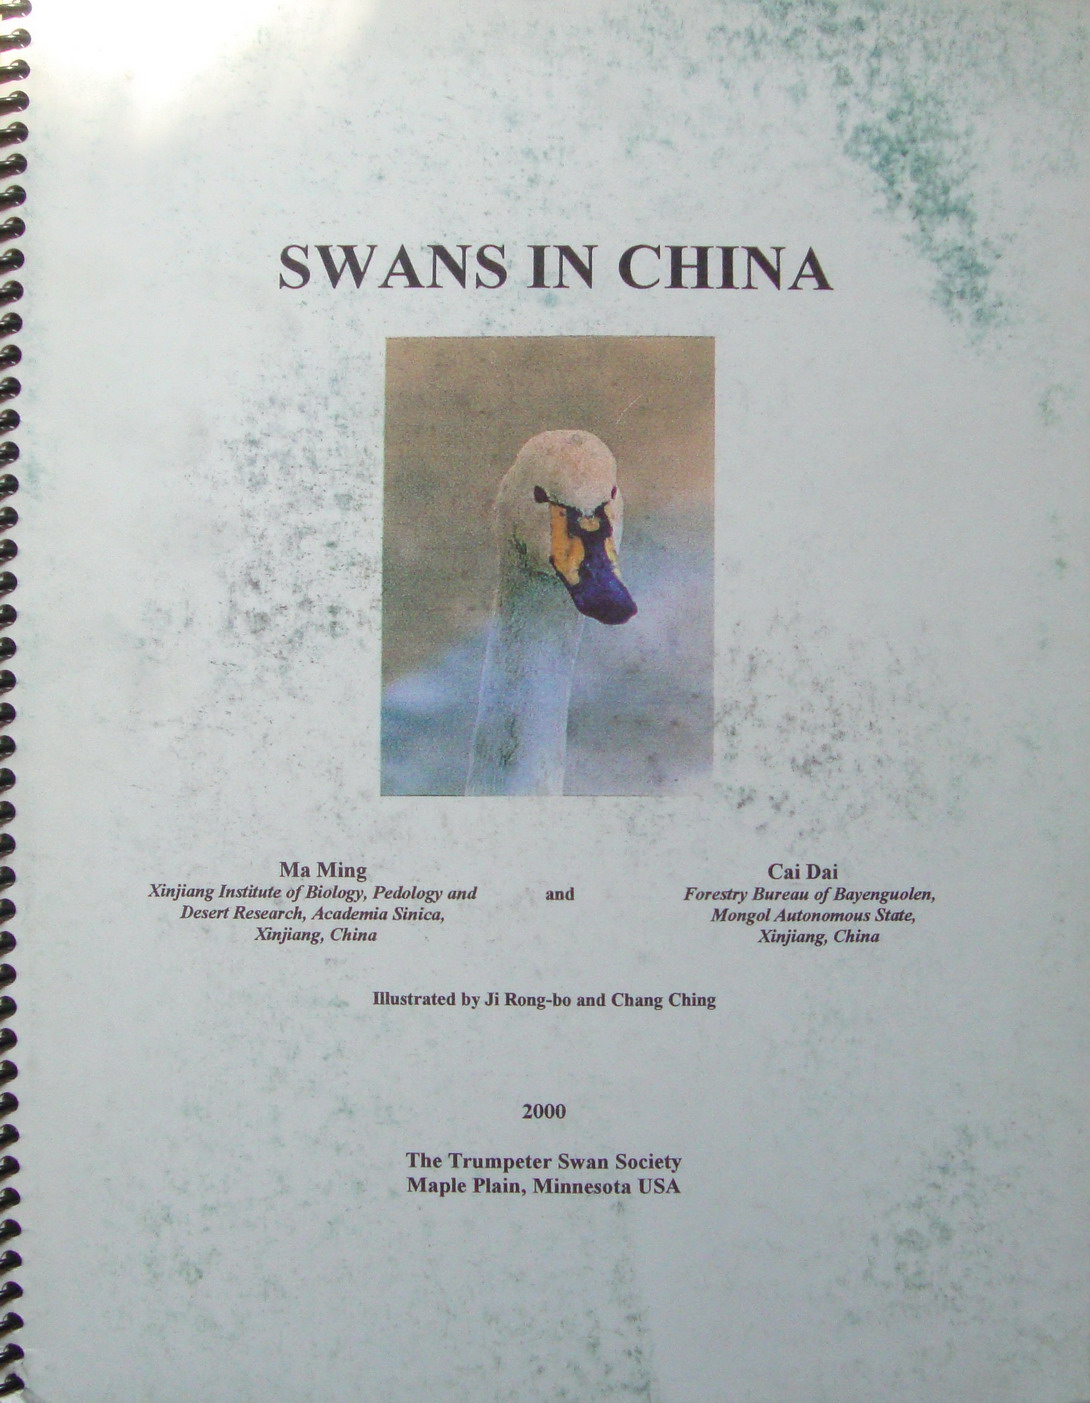 й Swans in China_2000_by MaMing and Cai Dai.jpg